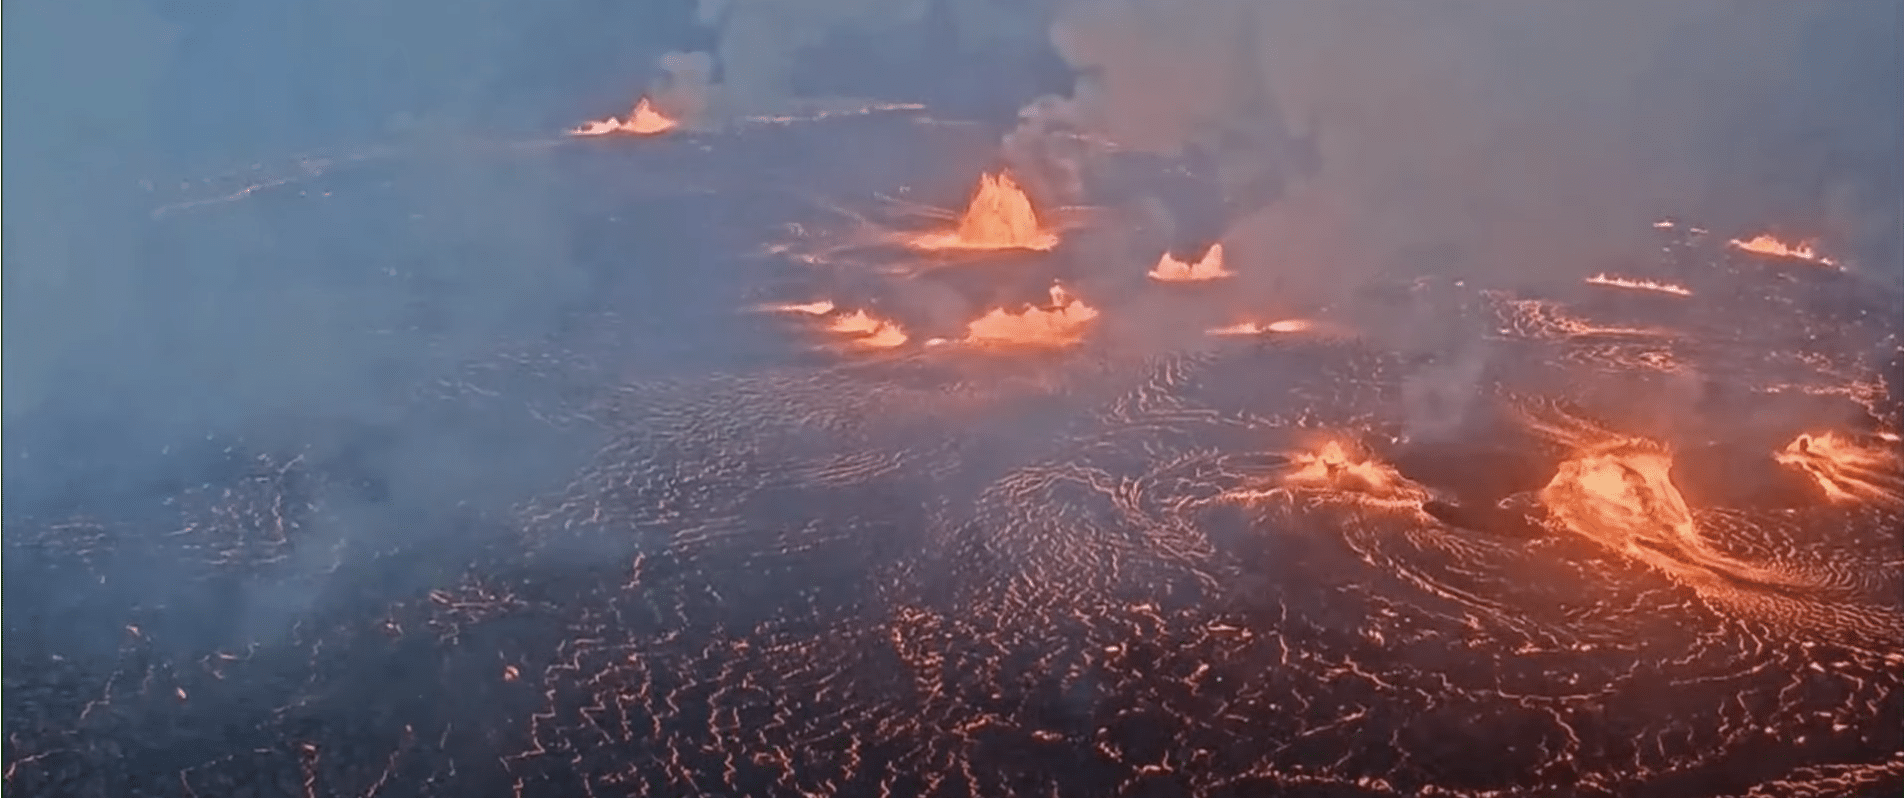 (WATCH) Hawaii’s Kilauea volcano has erupted on the Big Island